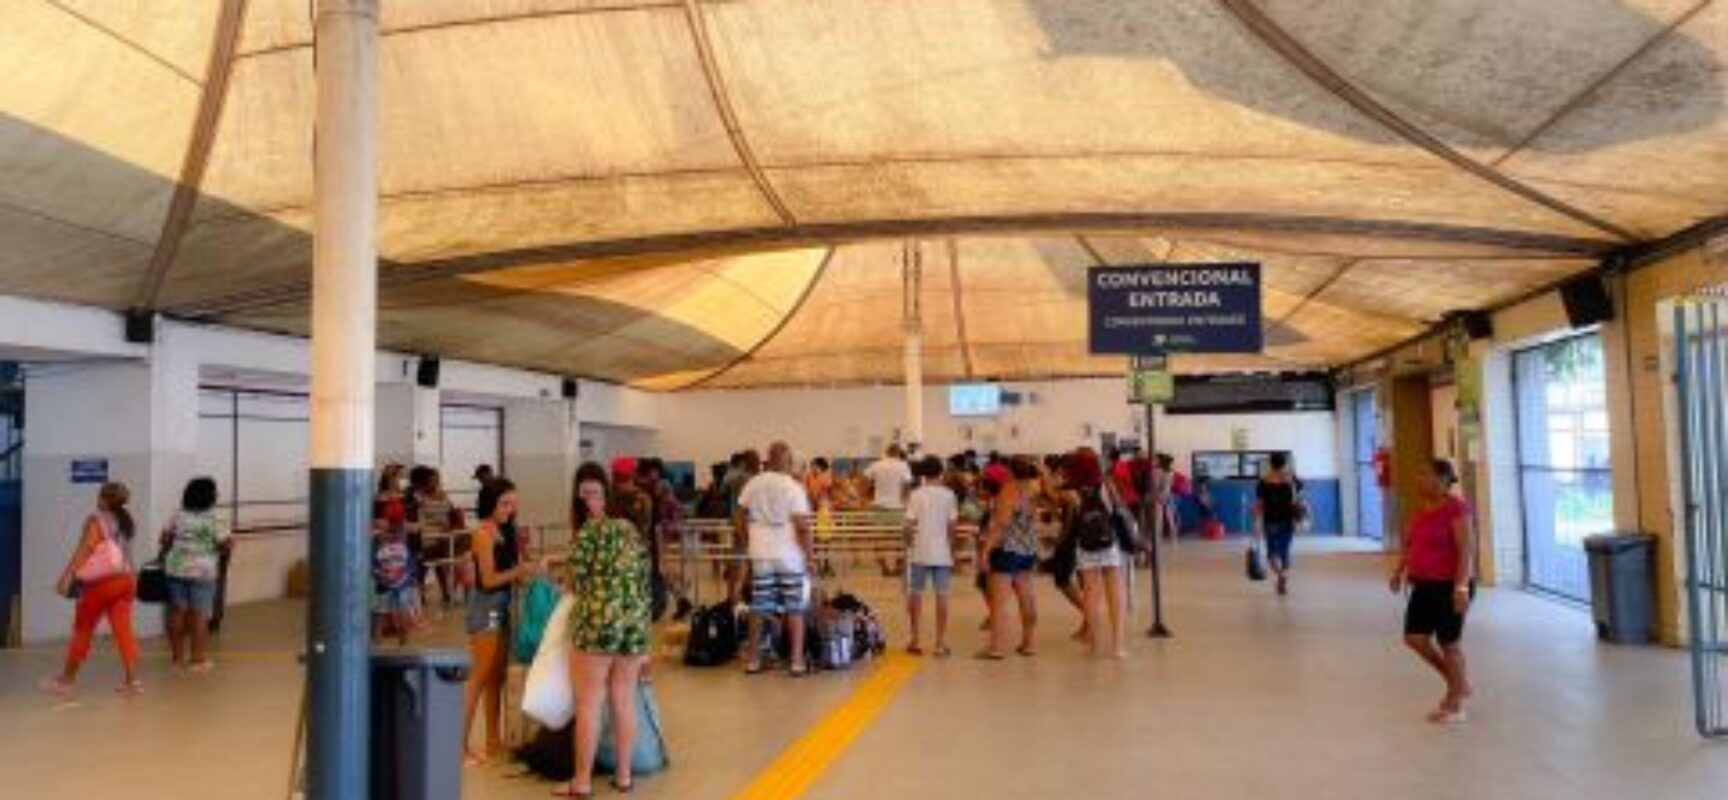 Ferry-Boat: Terminais São Joaquim e Bom Despacho passam a ter internet gratuita